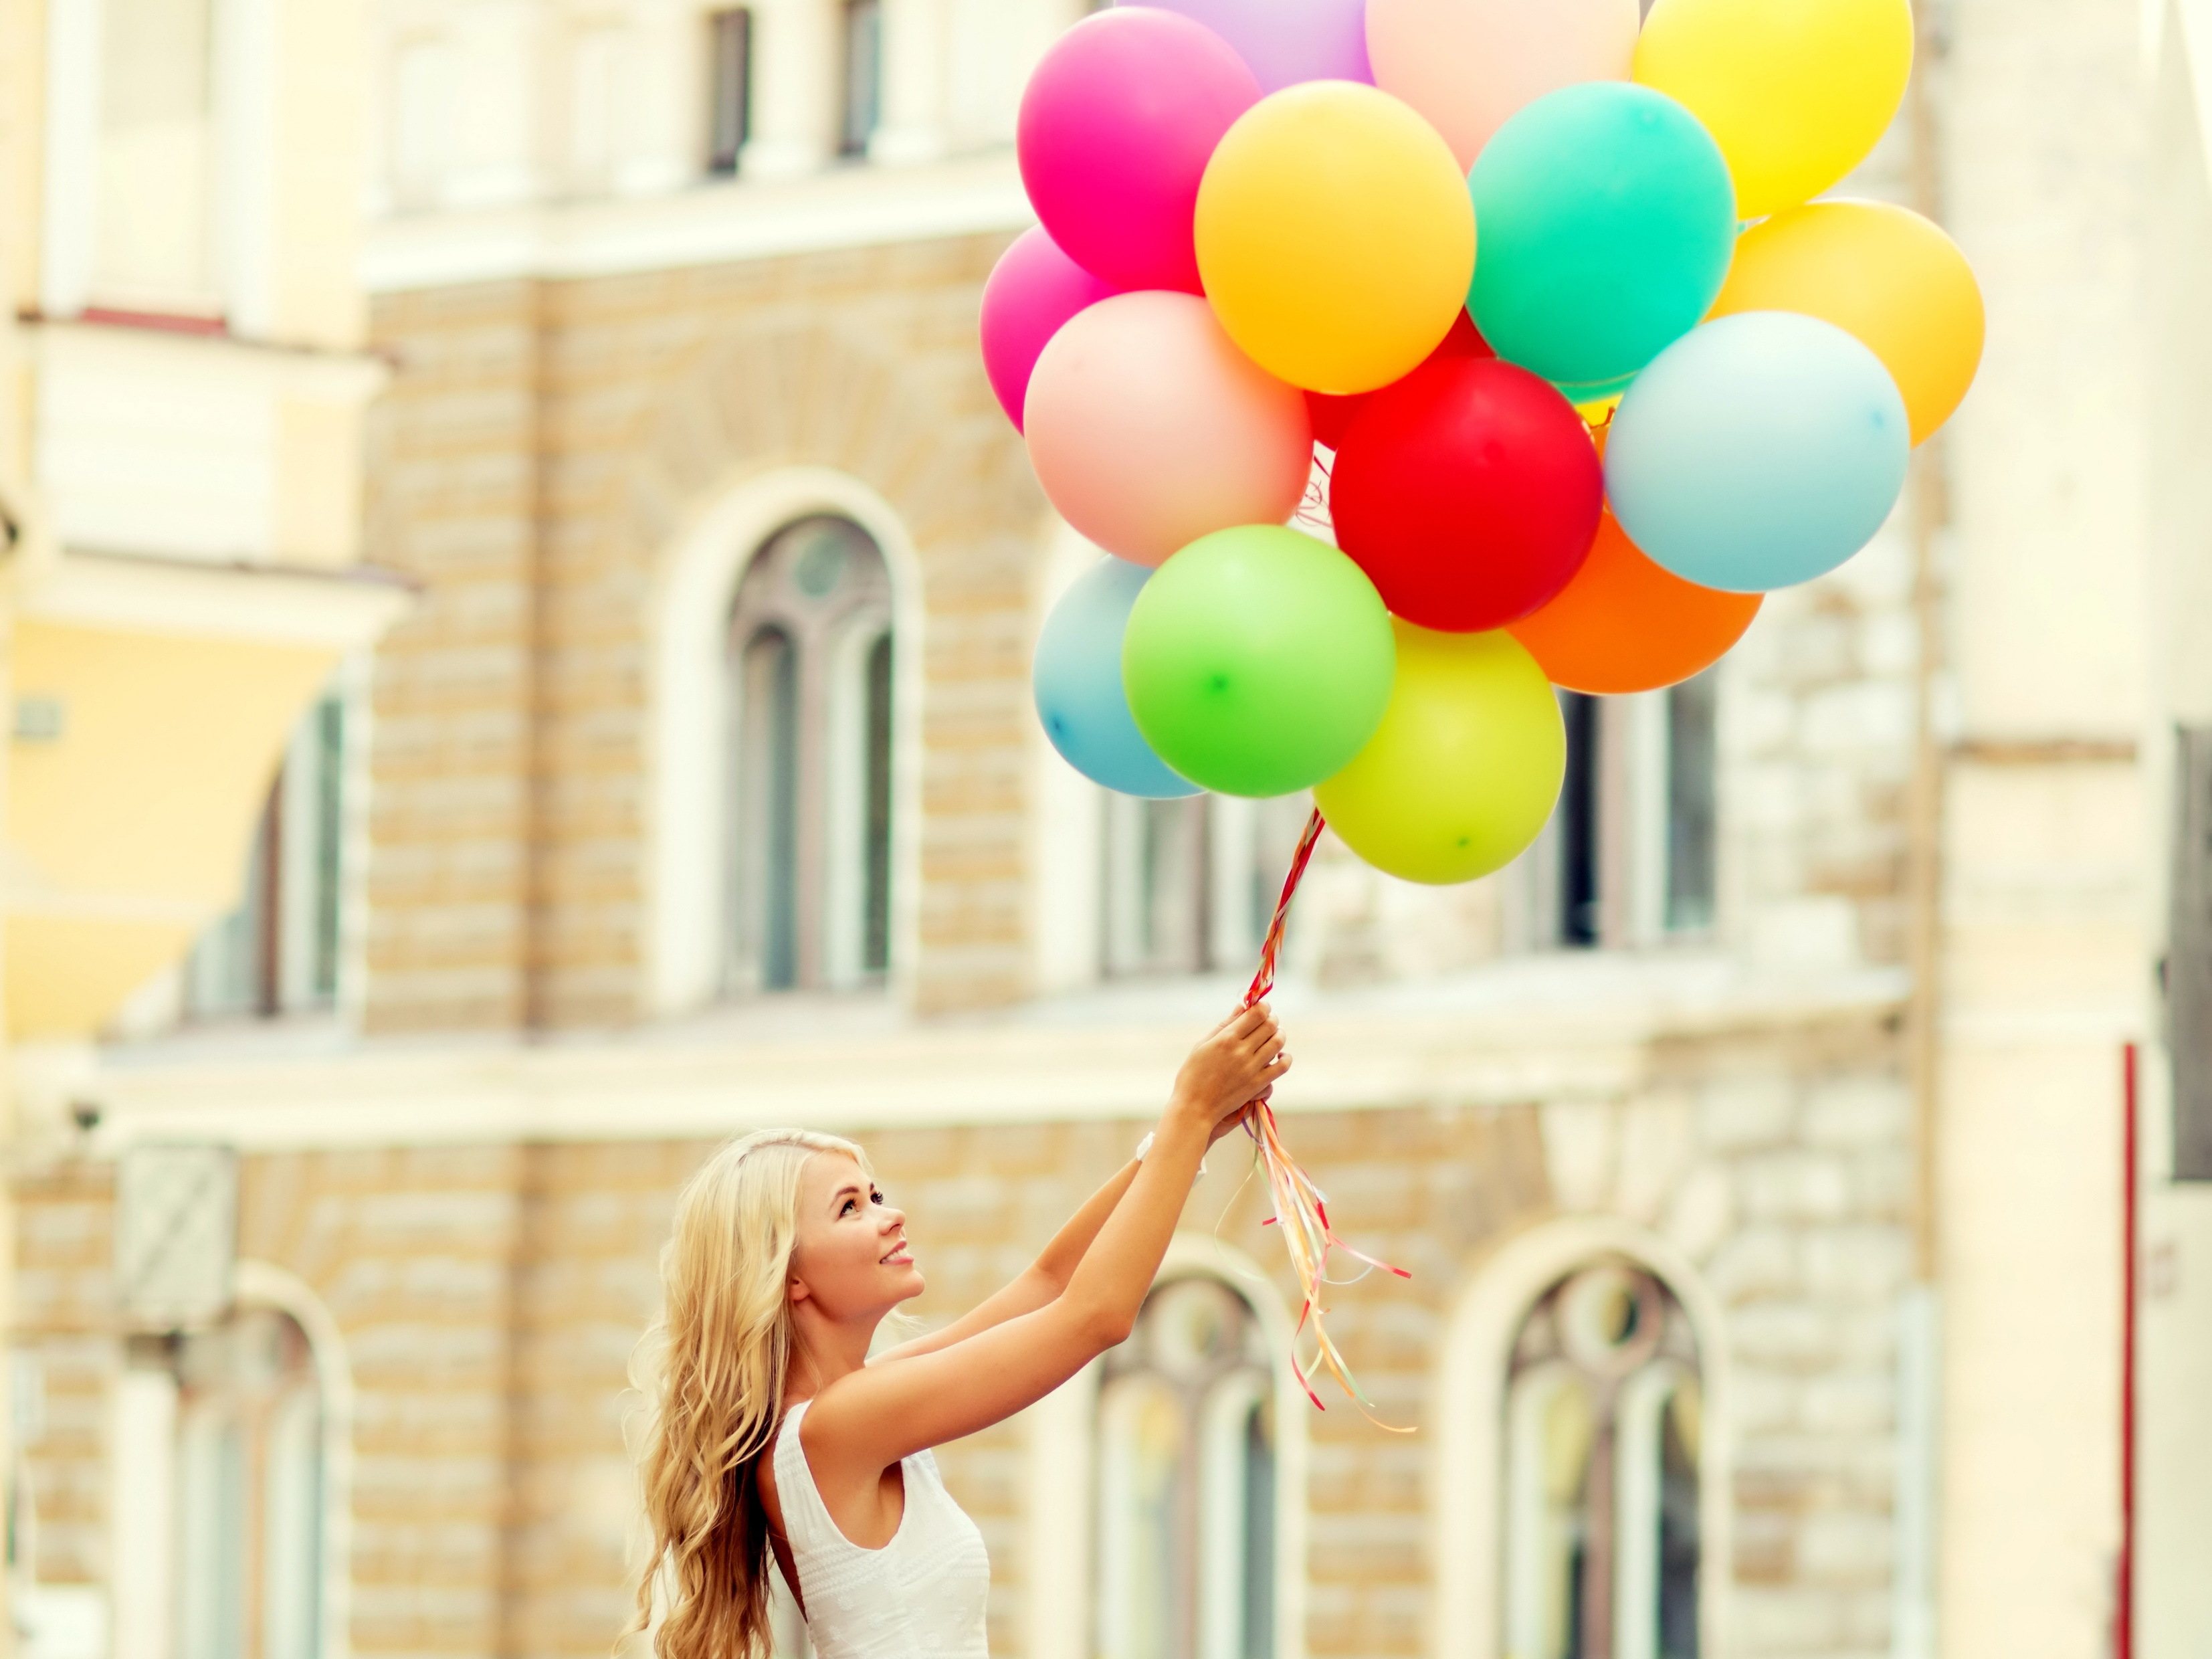 Танец с воздушными шарами. Девушка с воздушными шарами. Фотосессия с воздушными шарами. Фотосет с воздушными шарами. Фотосессия с воздушными шариками.